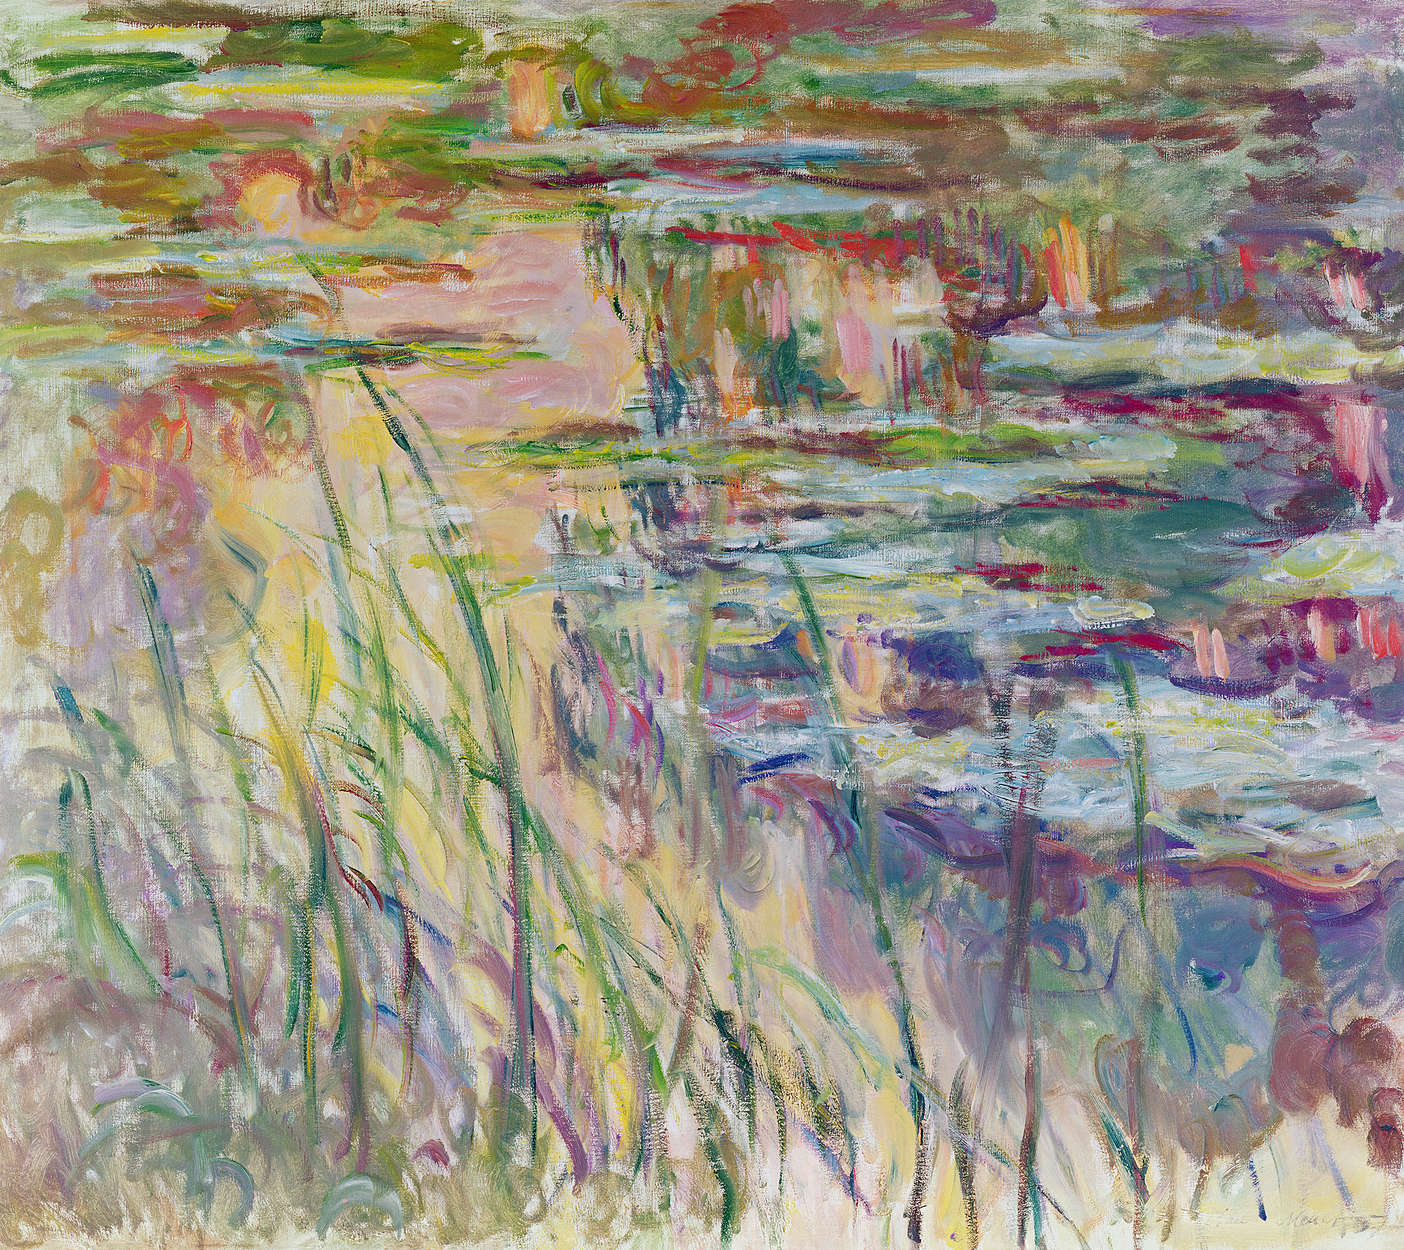             Fototapete "Spiegelungen auf dem Wasser" von Claude Monet
        